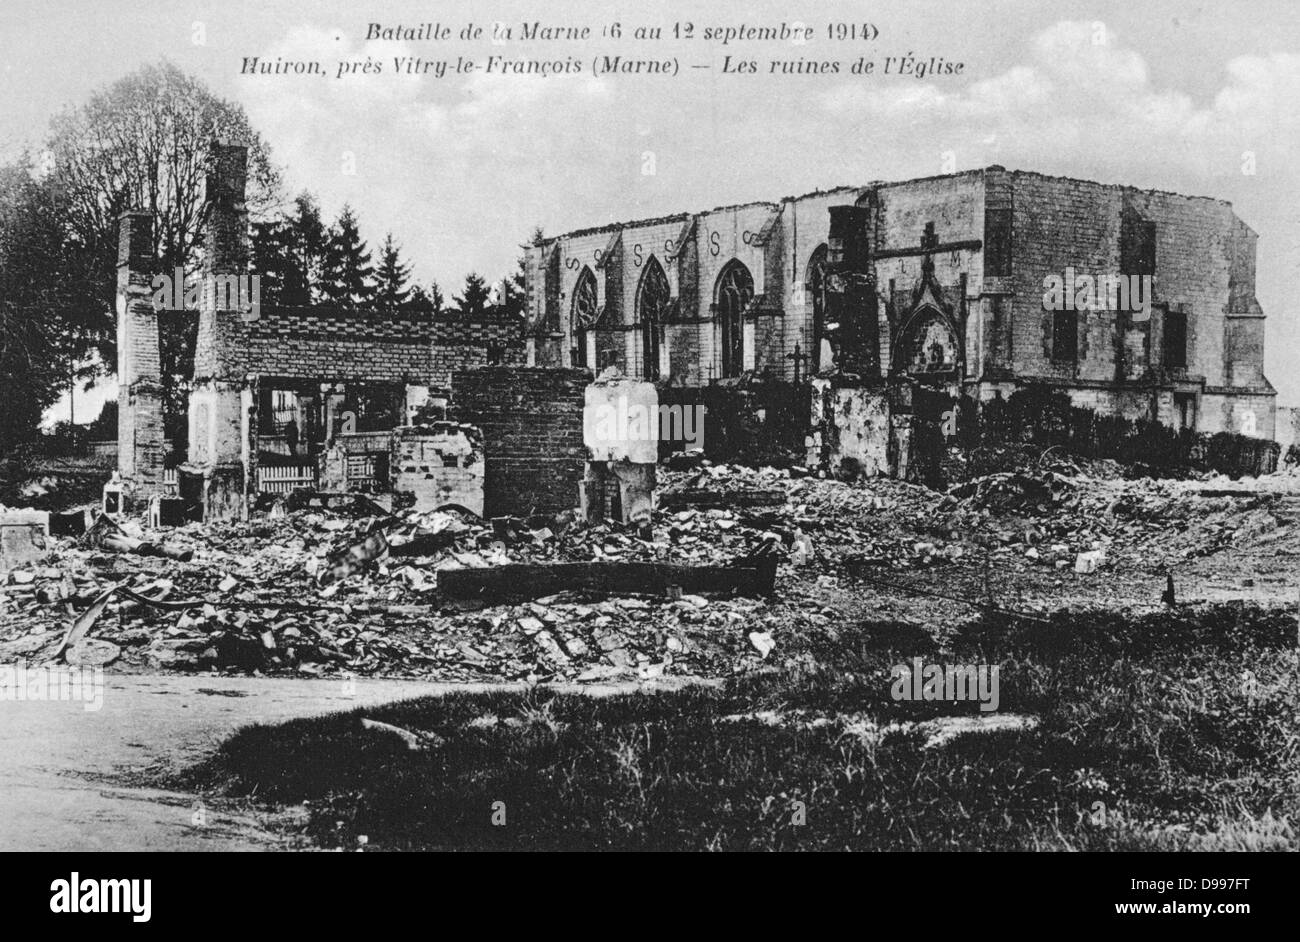 La Première Guerre mondiale 1914-1918 : Suite de la première bataille de la Marne, près de Paris, France, 5-12 septembre 1914 - Les ruines de l'église à Huiron, près de Vitry-le-François. La bataille fut une victoire stratégique des Alliés. Banque D'Images